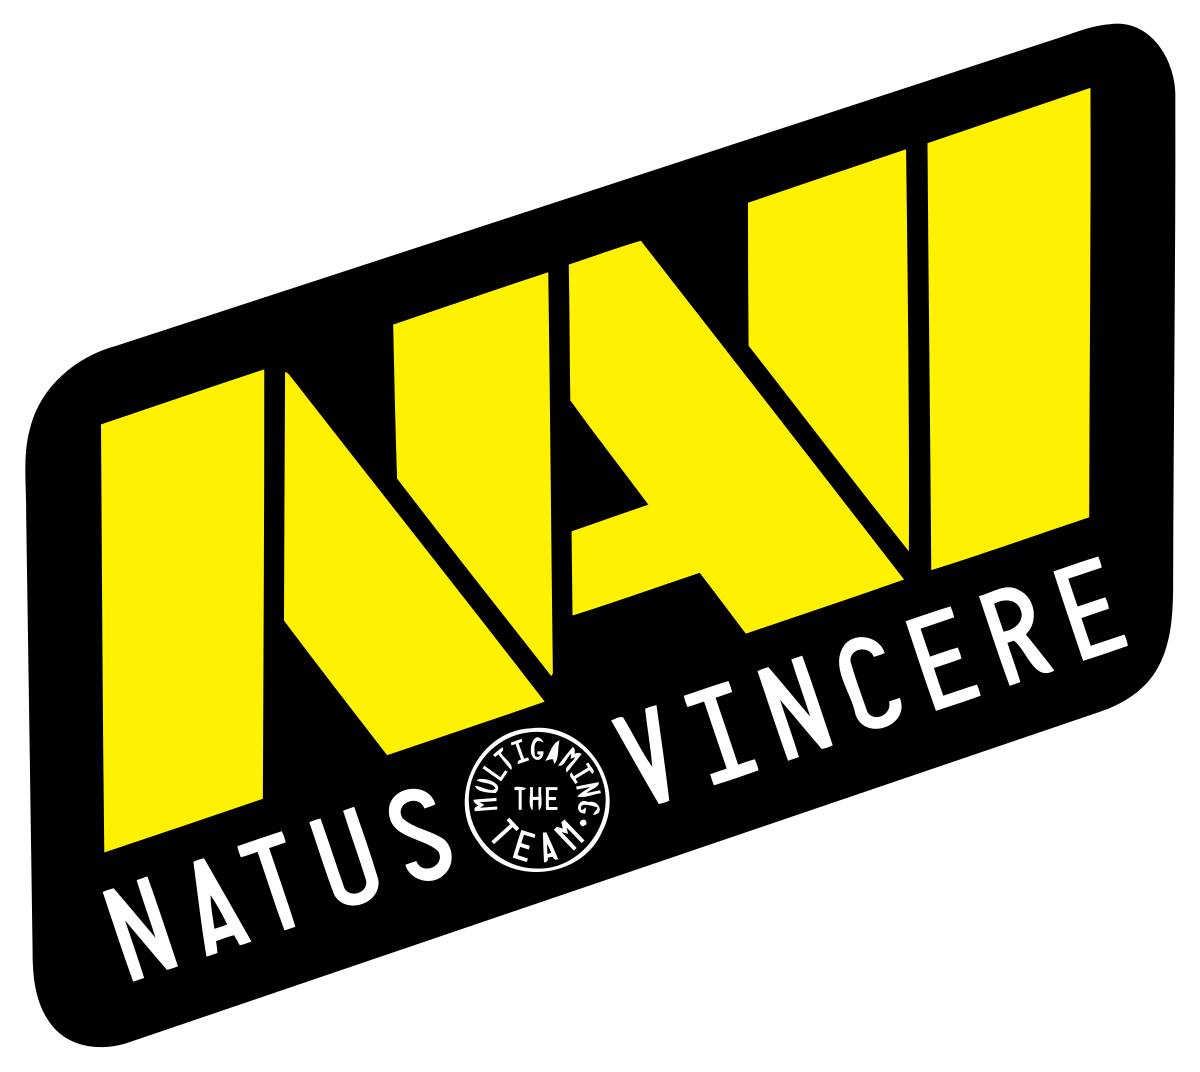 Natus Vincere сыграла вничью с Team Aster на мейджоре в США